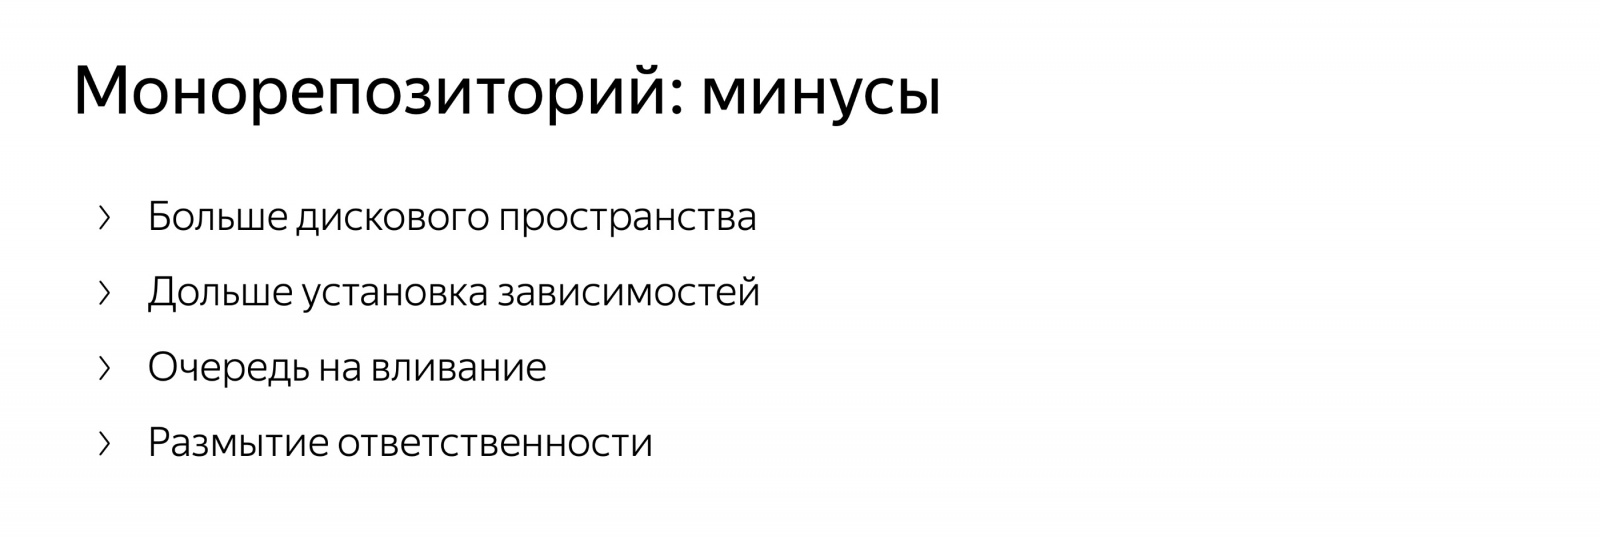 Разработка в монорепозитории. Доклад Яндекса - 3